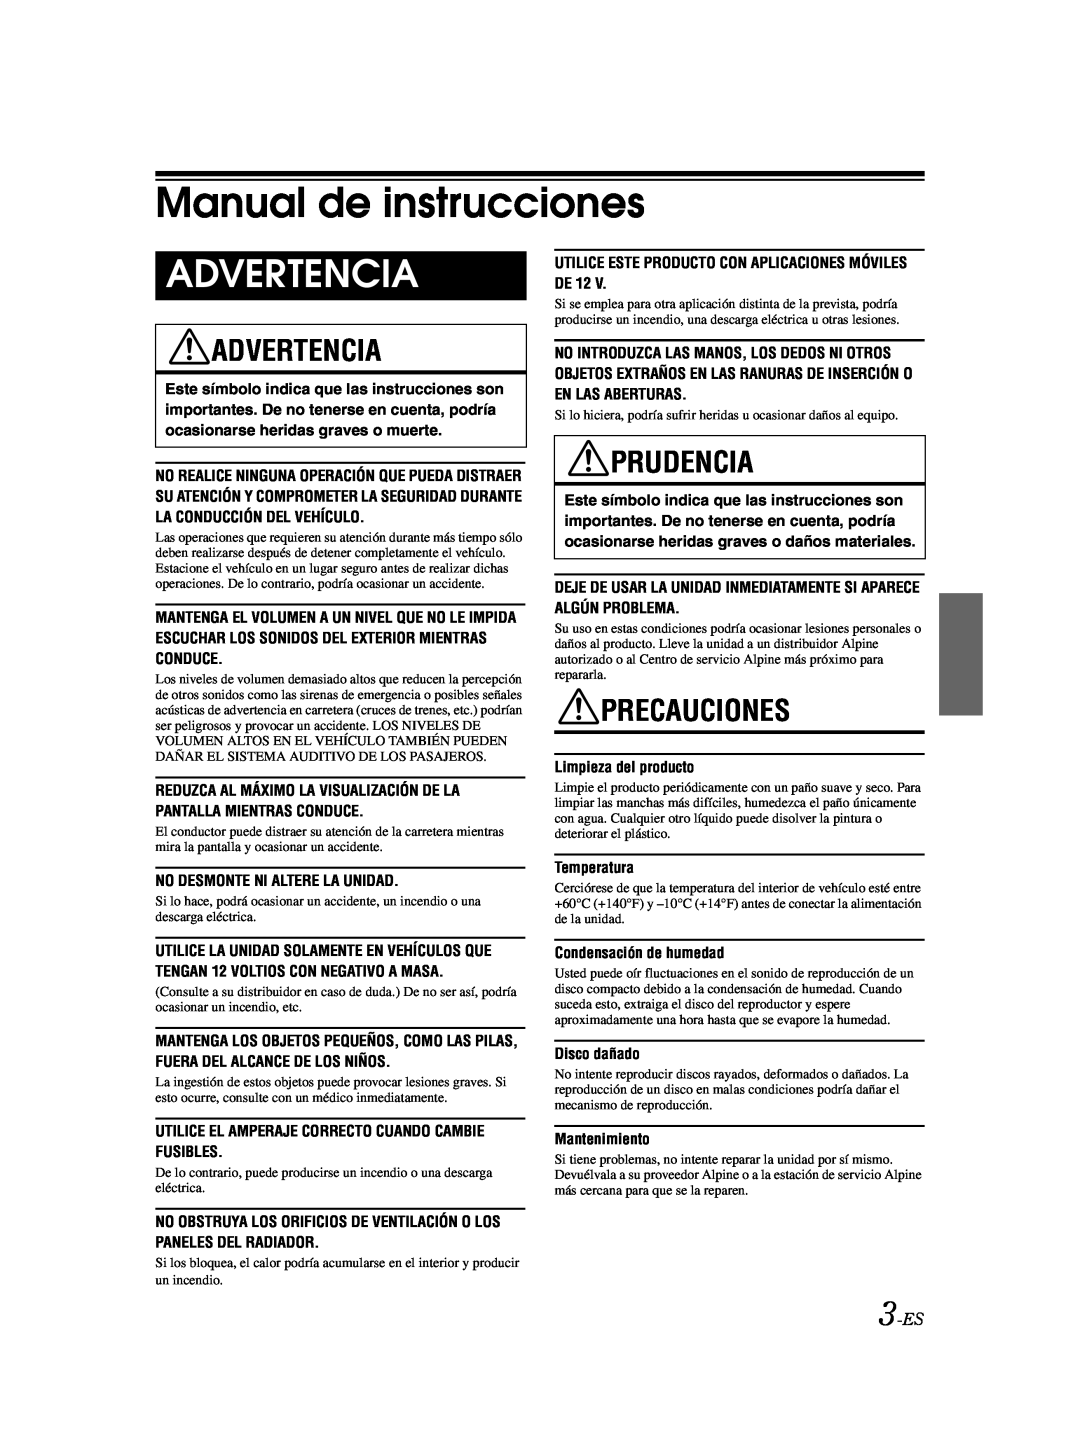 Alpine CDE-9873 owner manual Manual de instrucciones, Advertencia, Prudencia, Precauciones, 3-ES 